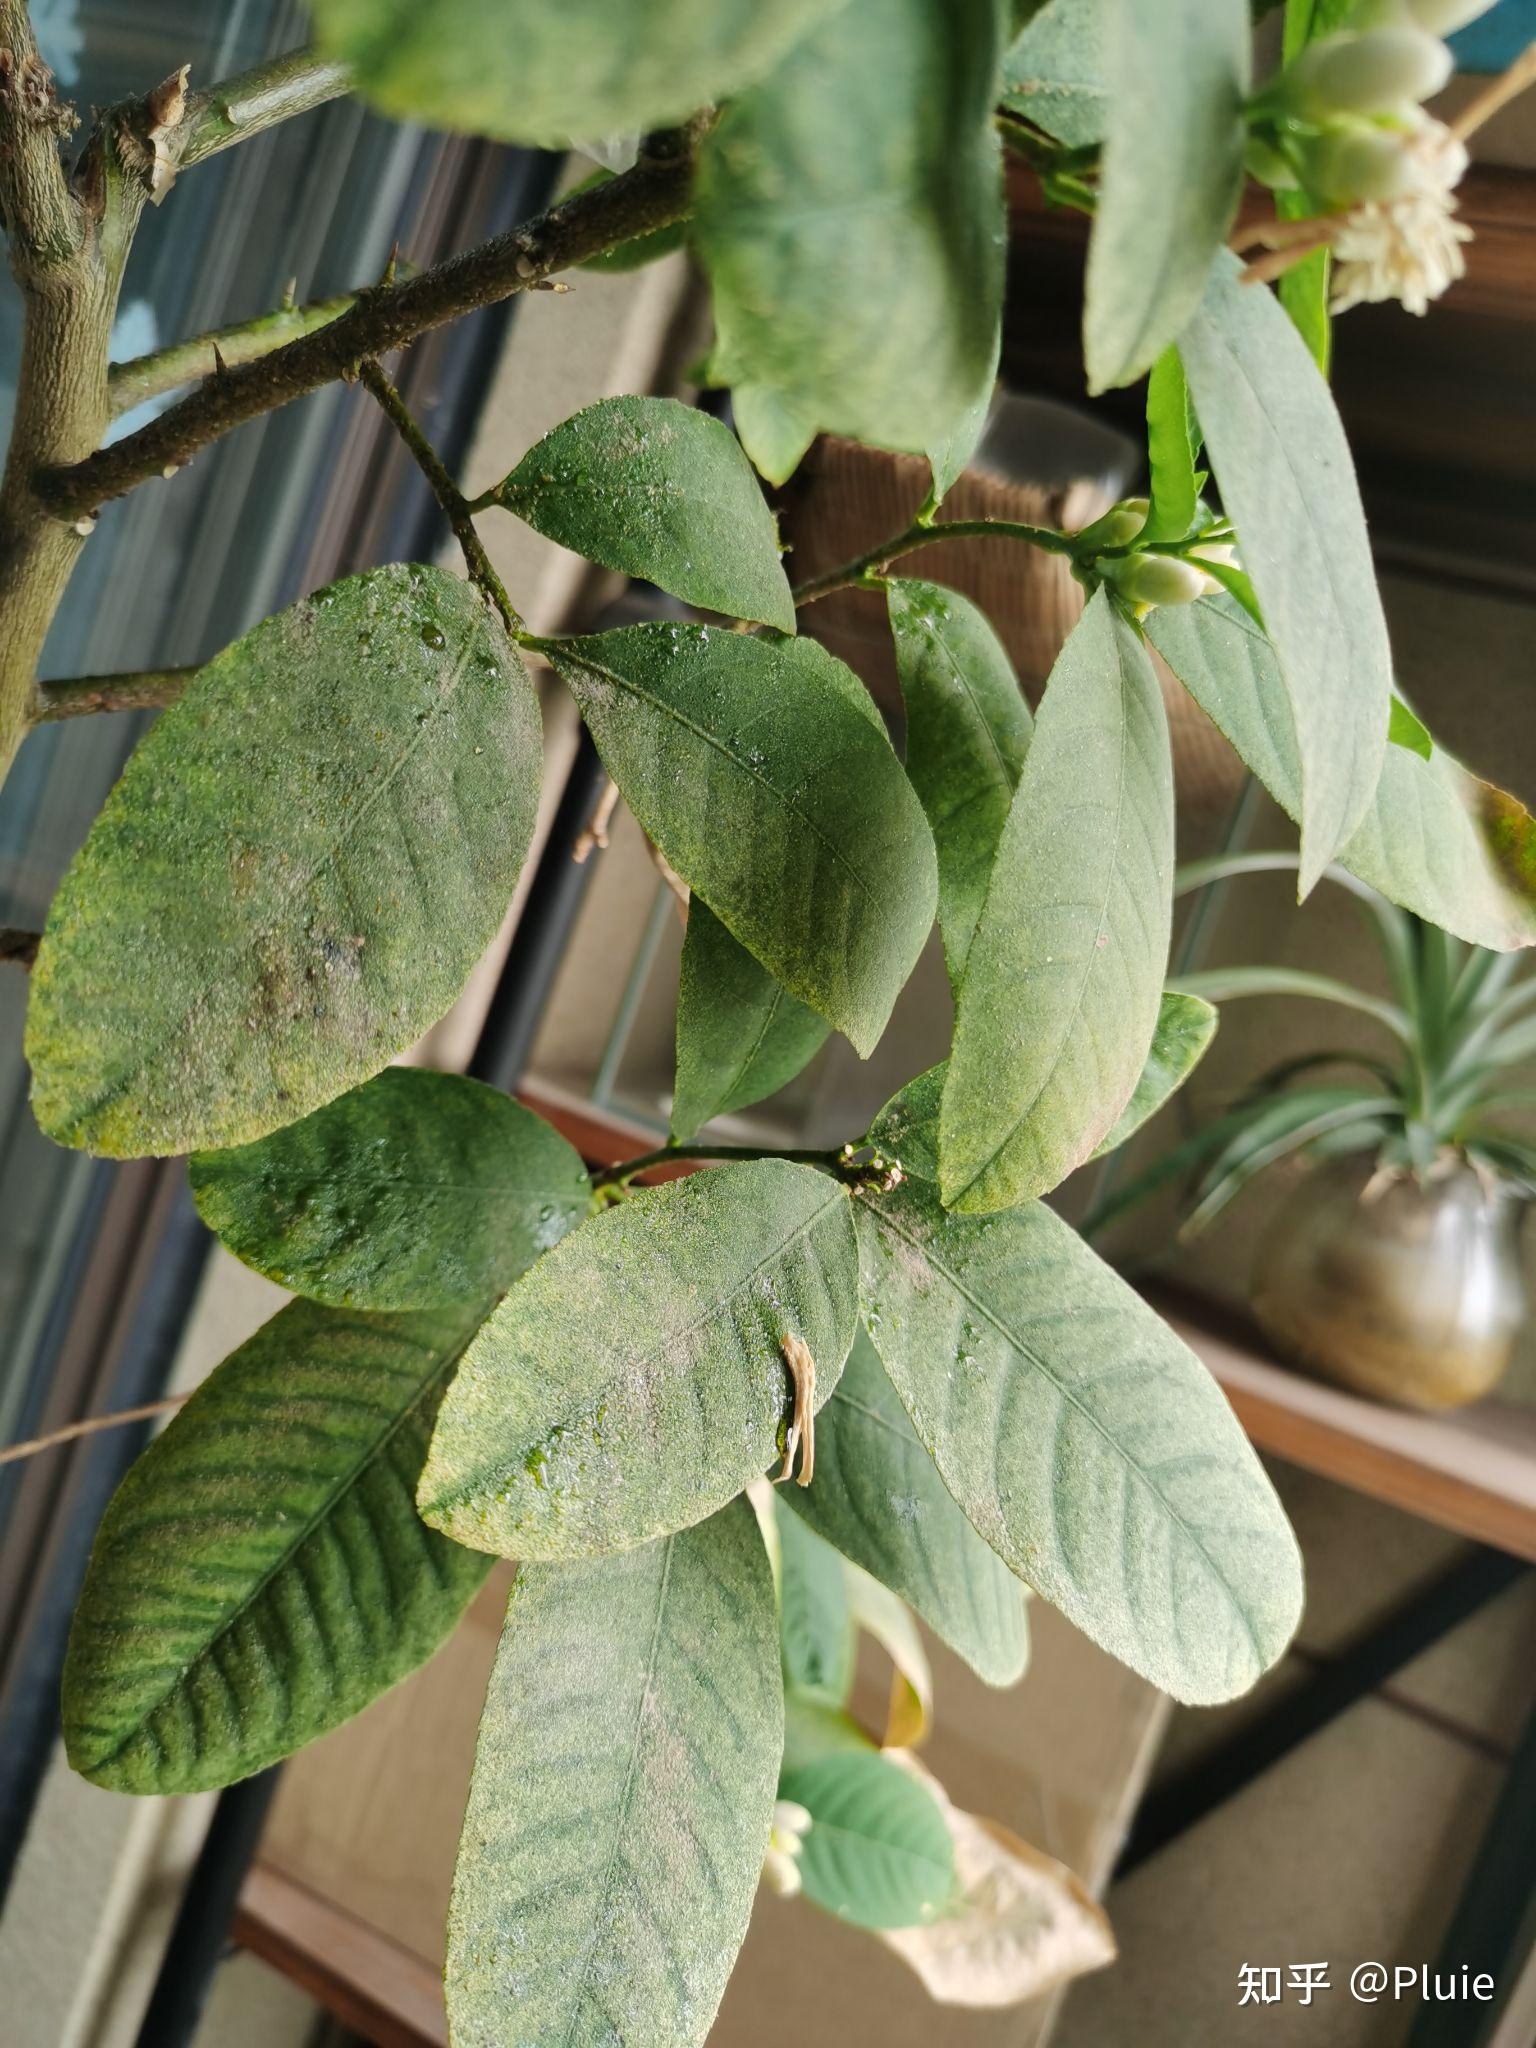 柠檬树叶片黏黏的是生病长虫子了吗